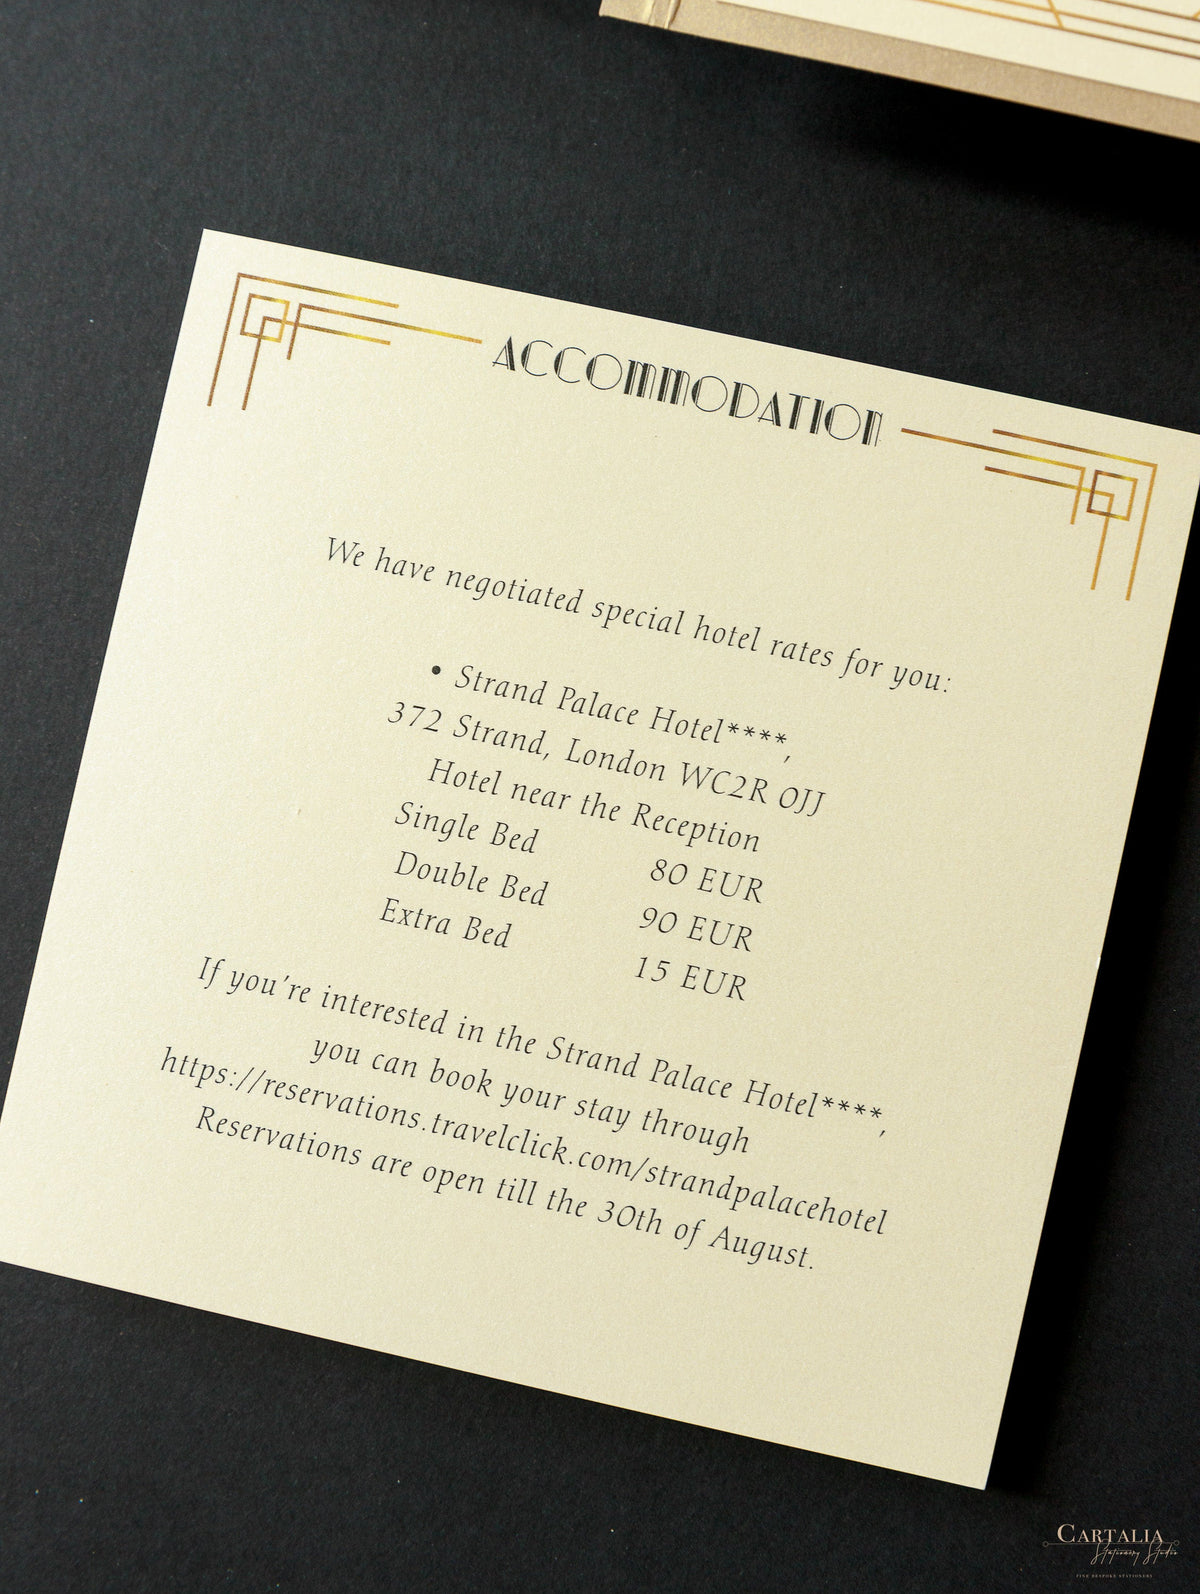 Suite de invitación de boda Art Deco cortada con láser Great Gatsby, cortada con láser, con bolsillo y 3 niveles: información para huéspedes, viajes y tarjeta de confirmación de asistencia